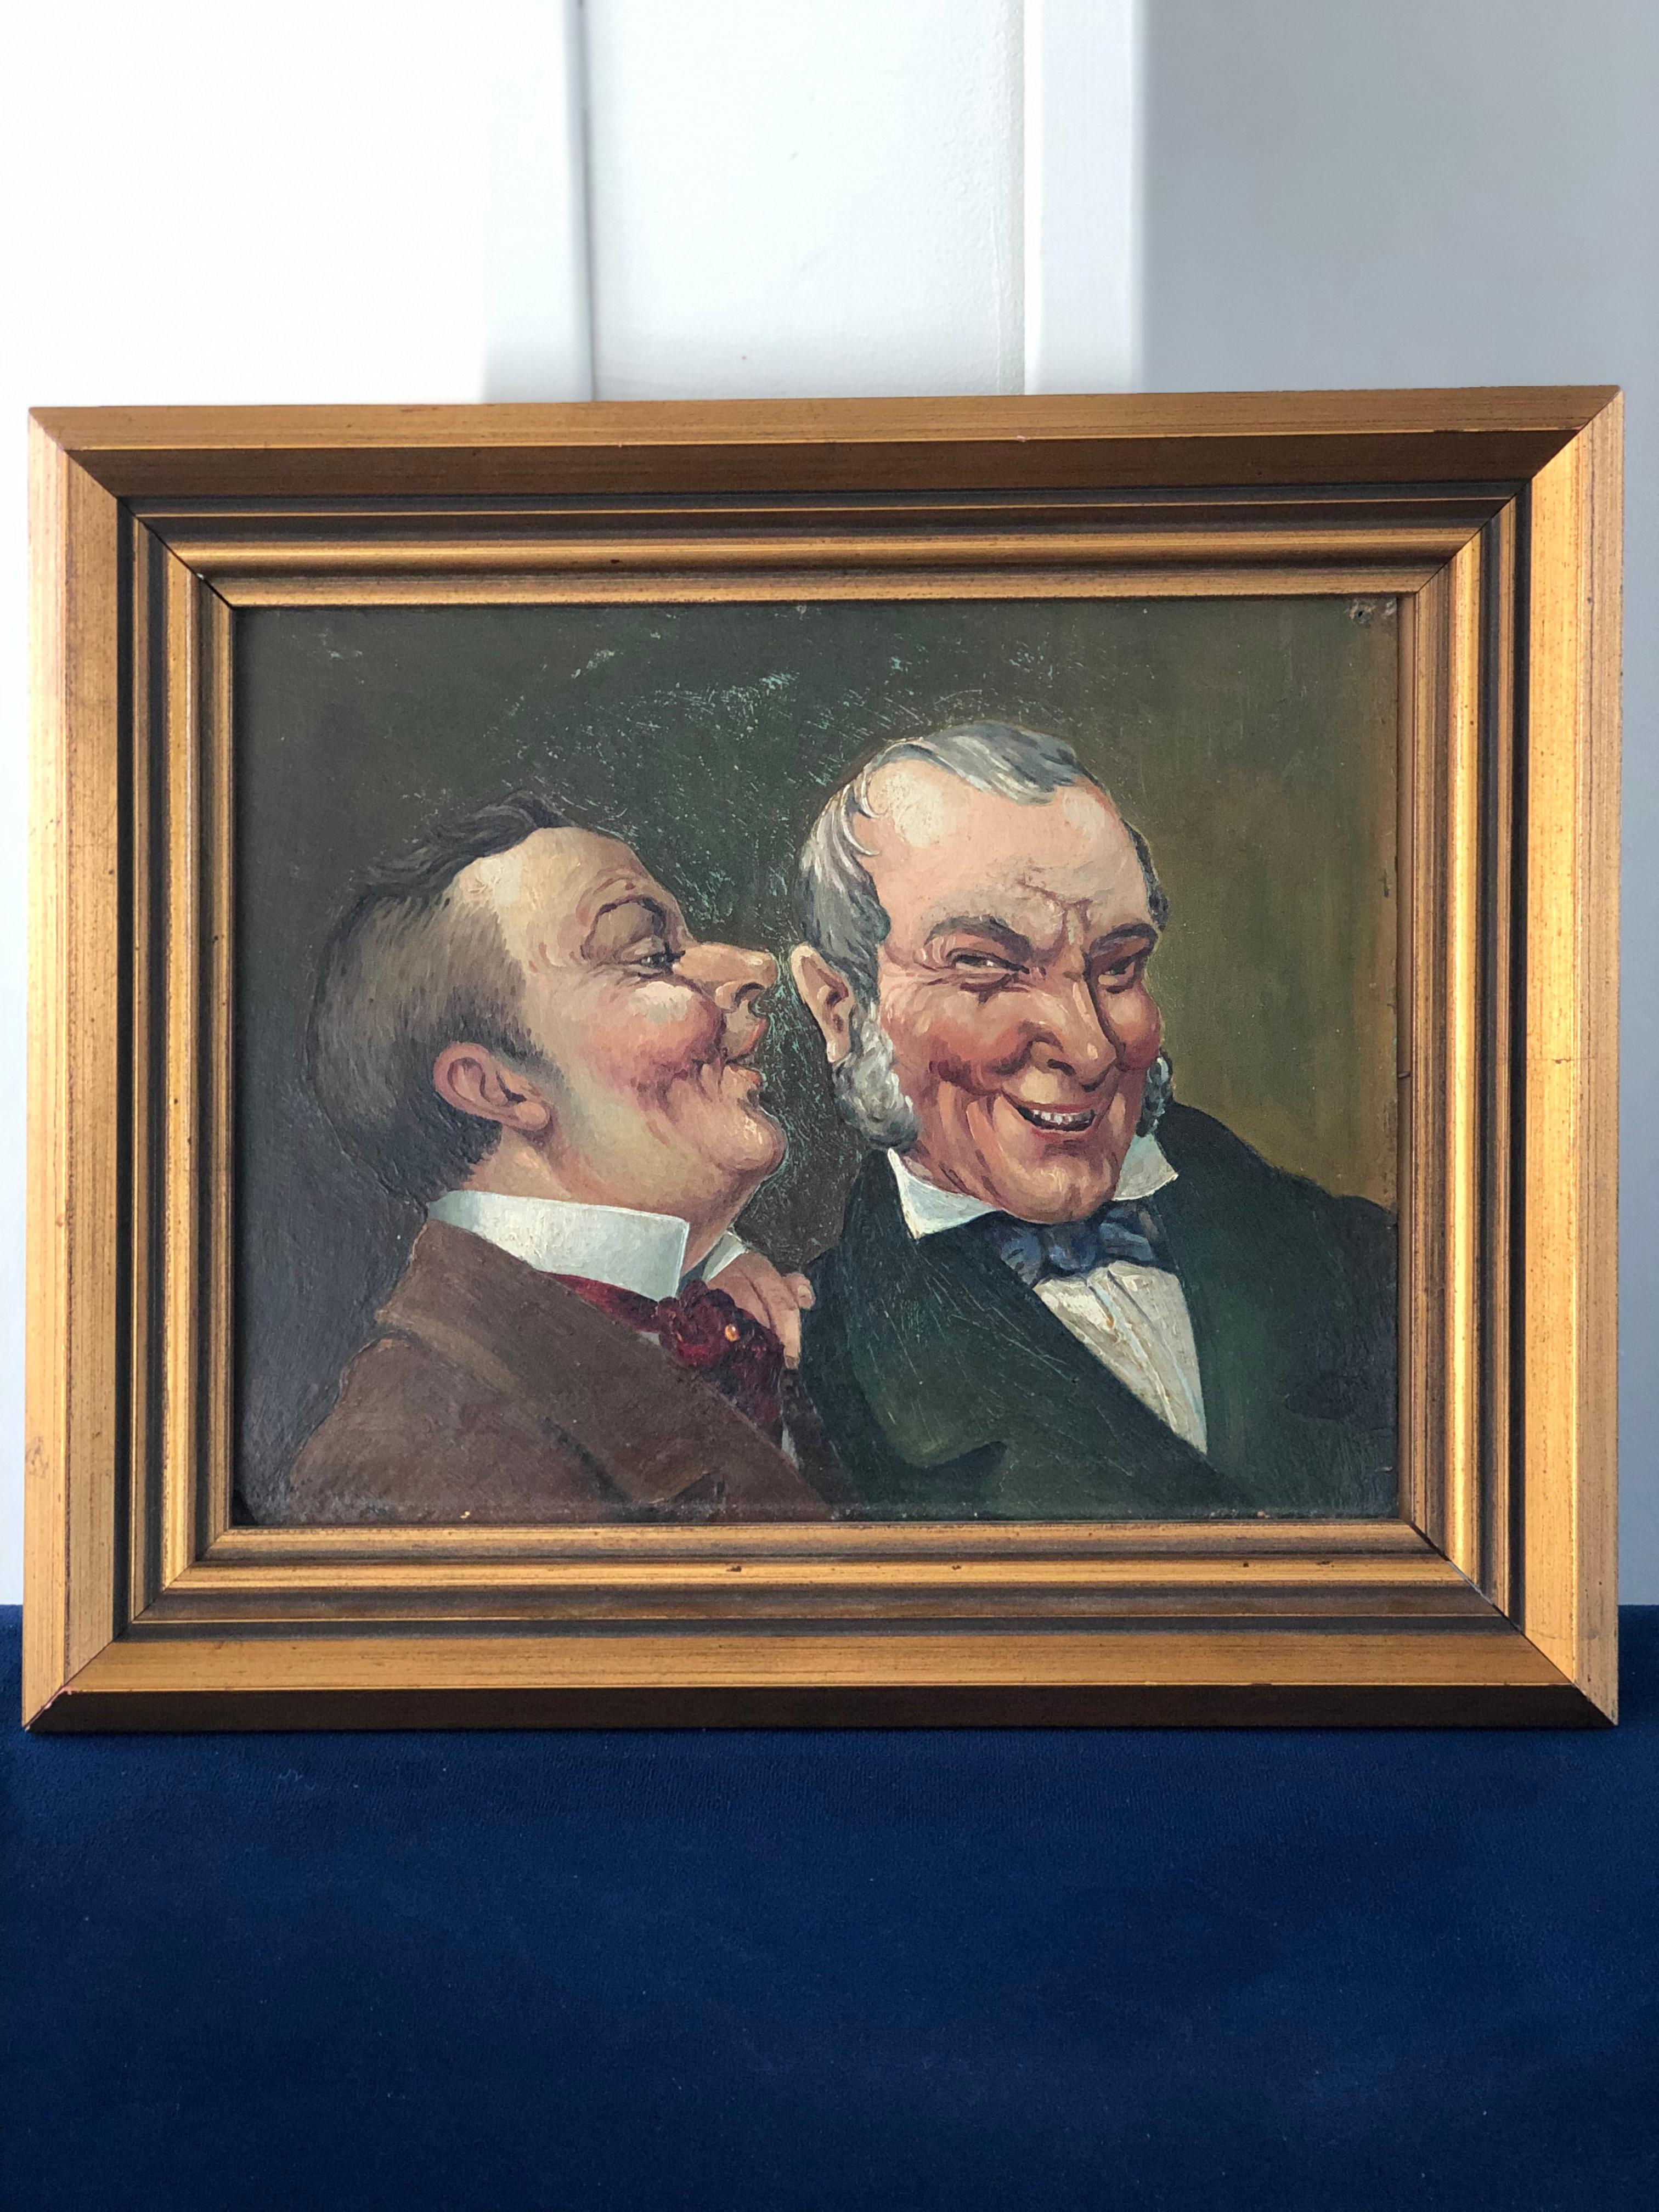 Capturez un moment de camaraderie et de rire avec cette charmante peinture à l'huile représentant deux hommes partageant un moment amusant. Avec des traits vibrants et des détails expressifs, l'artiste capture la chaleur et l'humour de leur rire